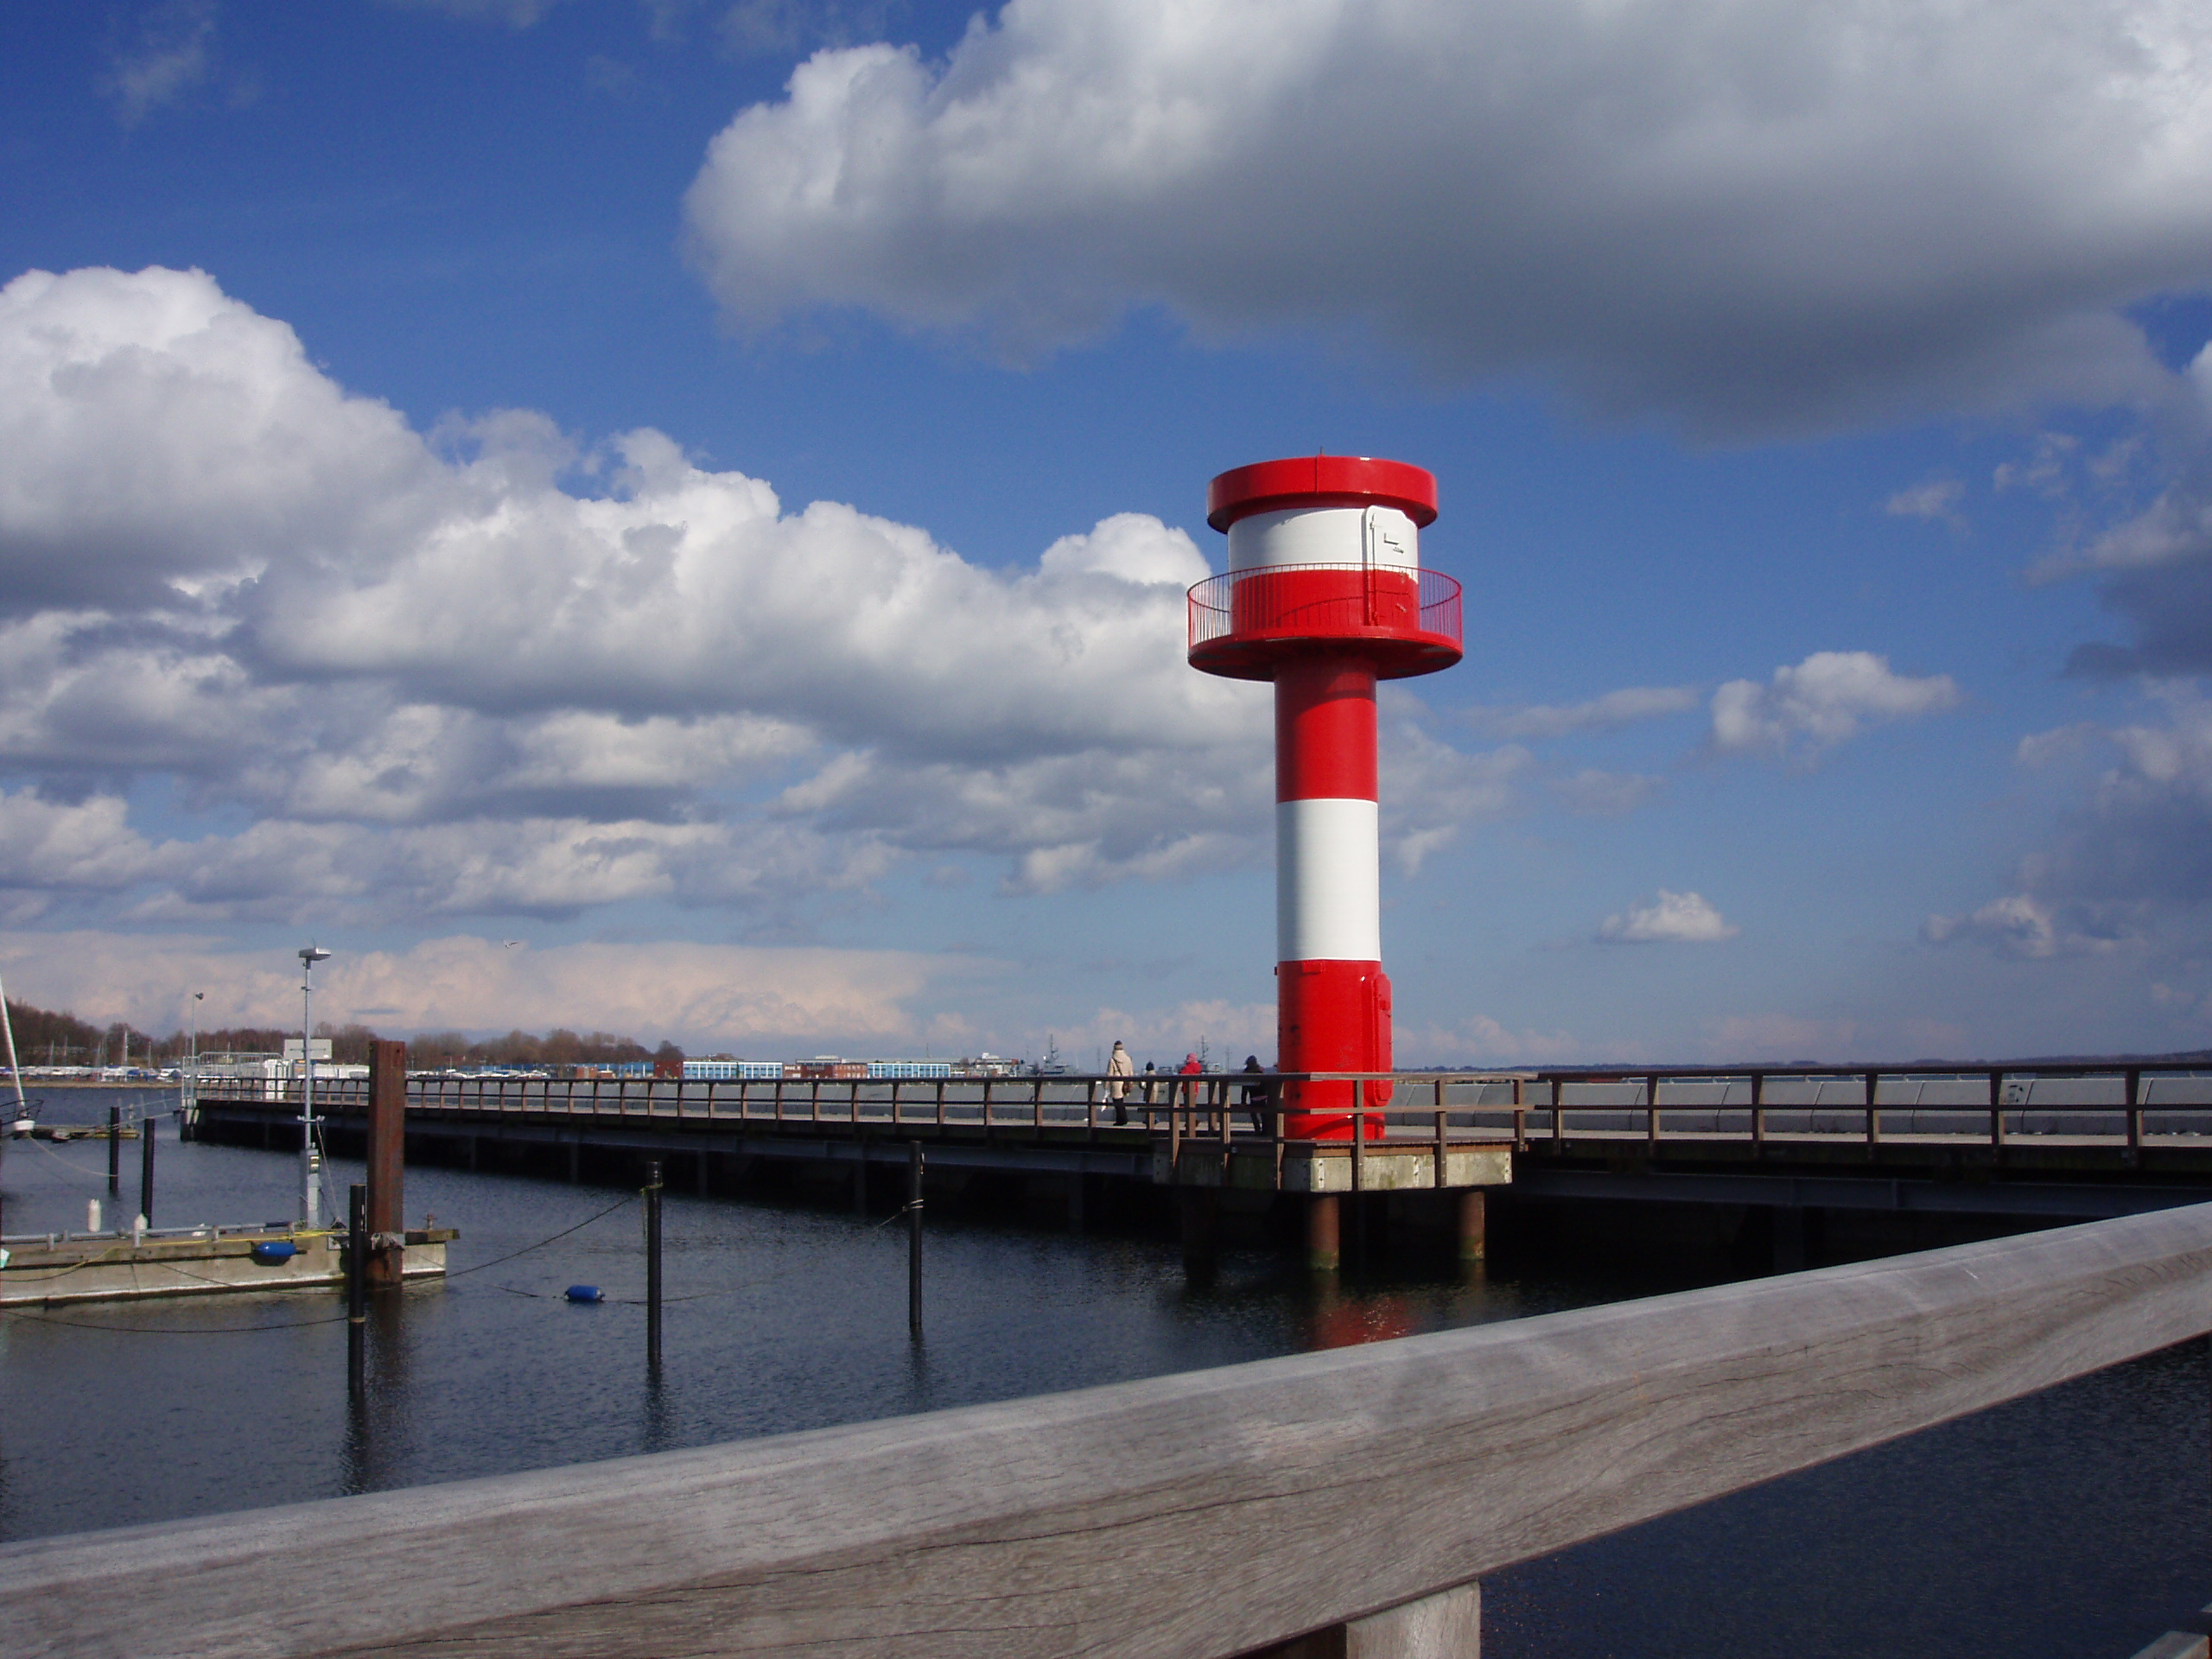 Der Neuer Leuchtturm Eckernförde (Hafen) im Bundesland Schleswig-Holstein in der Region Ostsee/Eckernförder Bucht in der Übersicht aller Leuchttürme in Deutschland bei Natura Event.